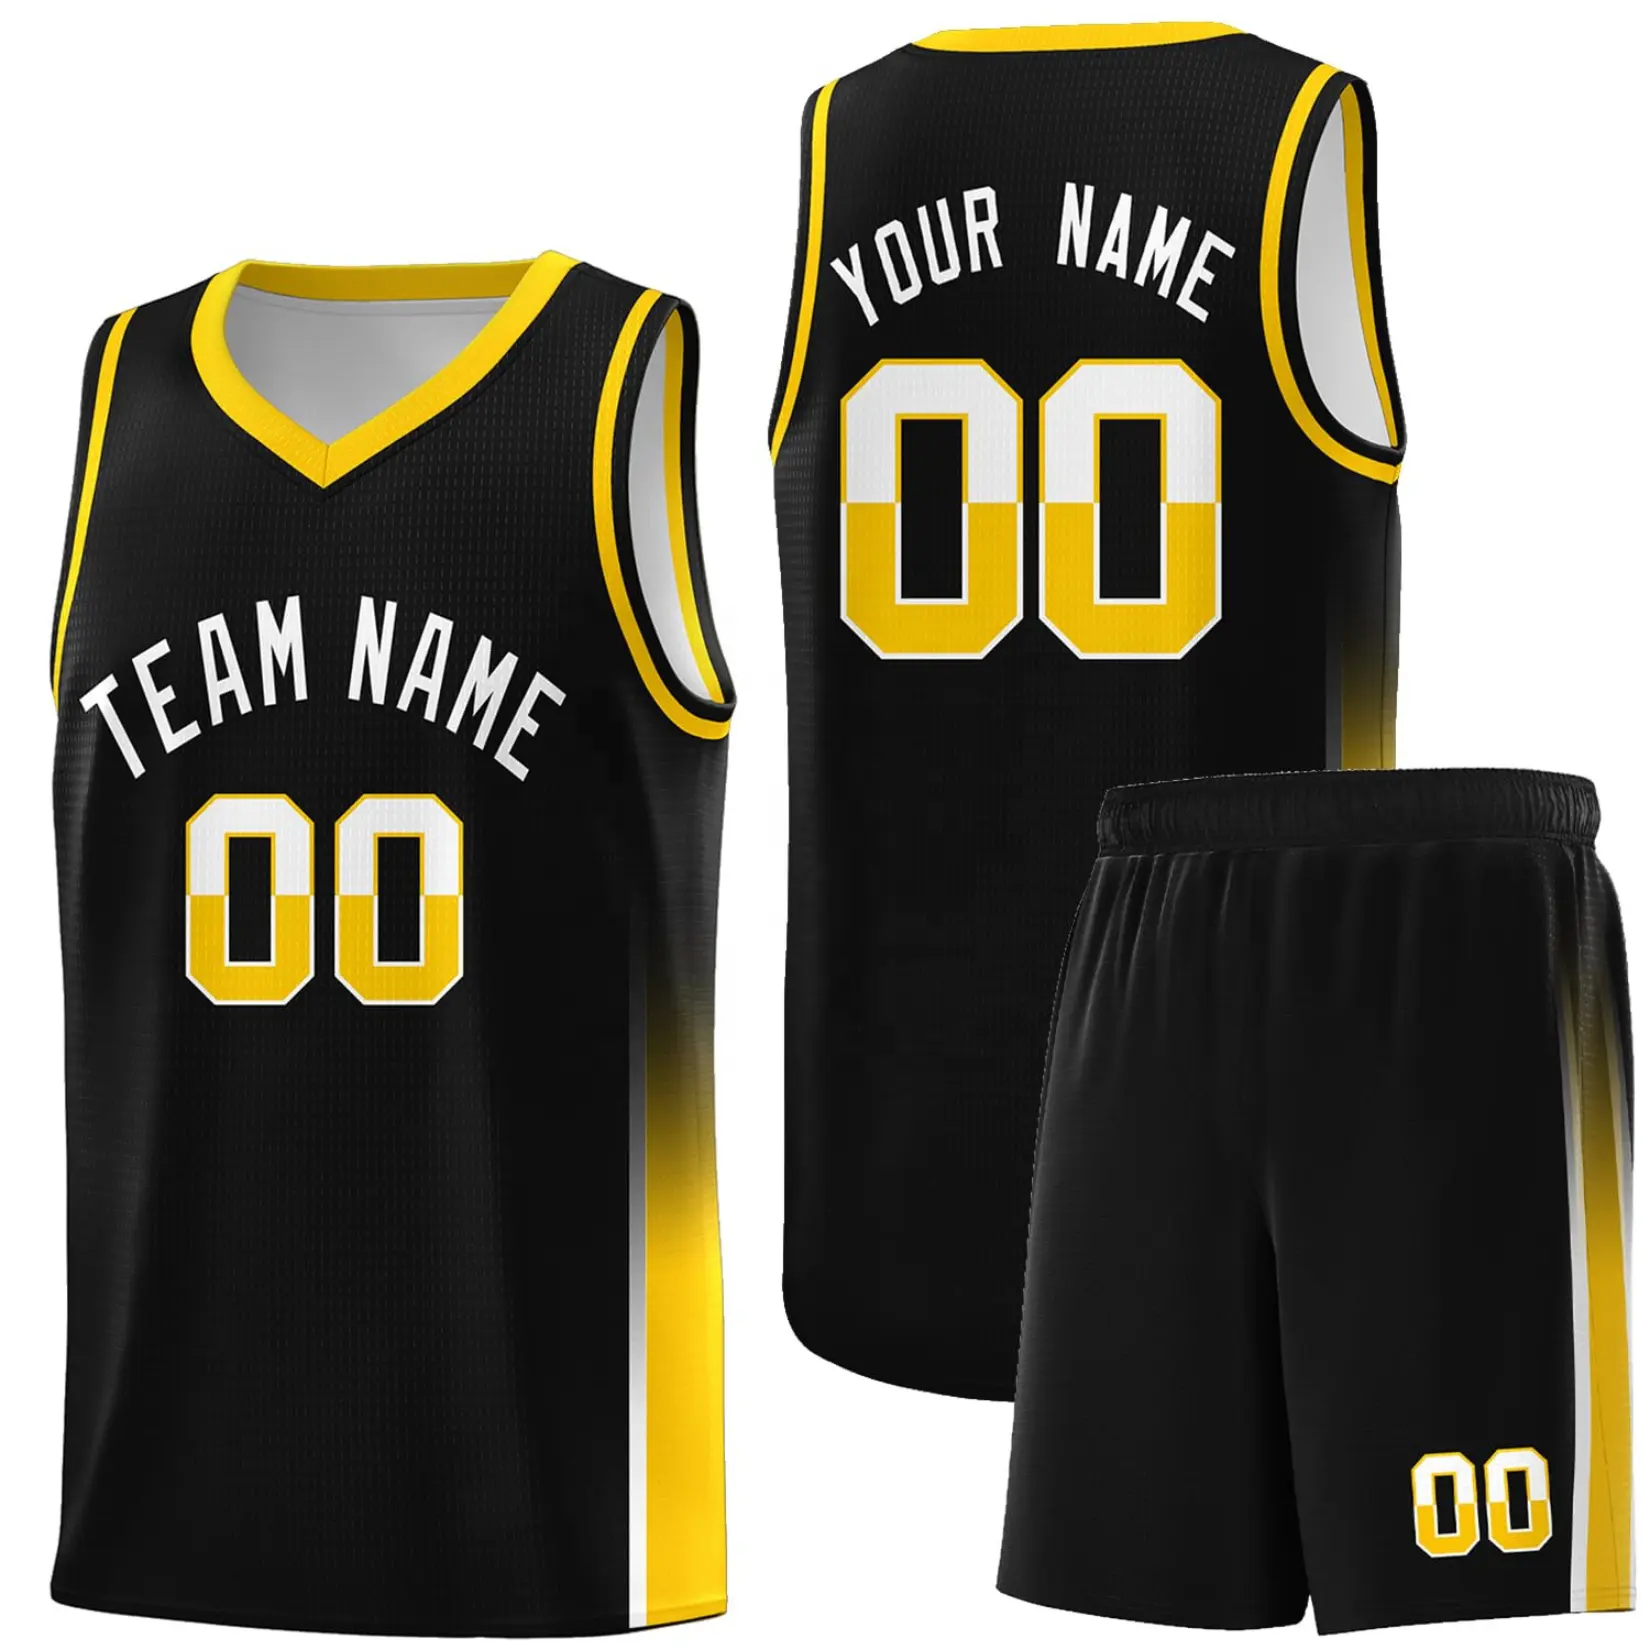 Uniforme reversível de camisa de basquete personalizada, colete esportivo personalizado com número de equipe, para adultos/crianças, adicionar qualquer número